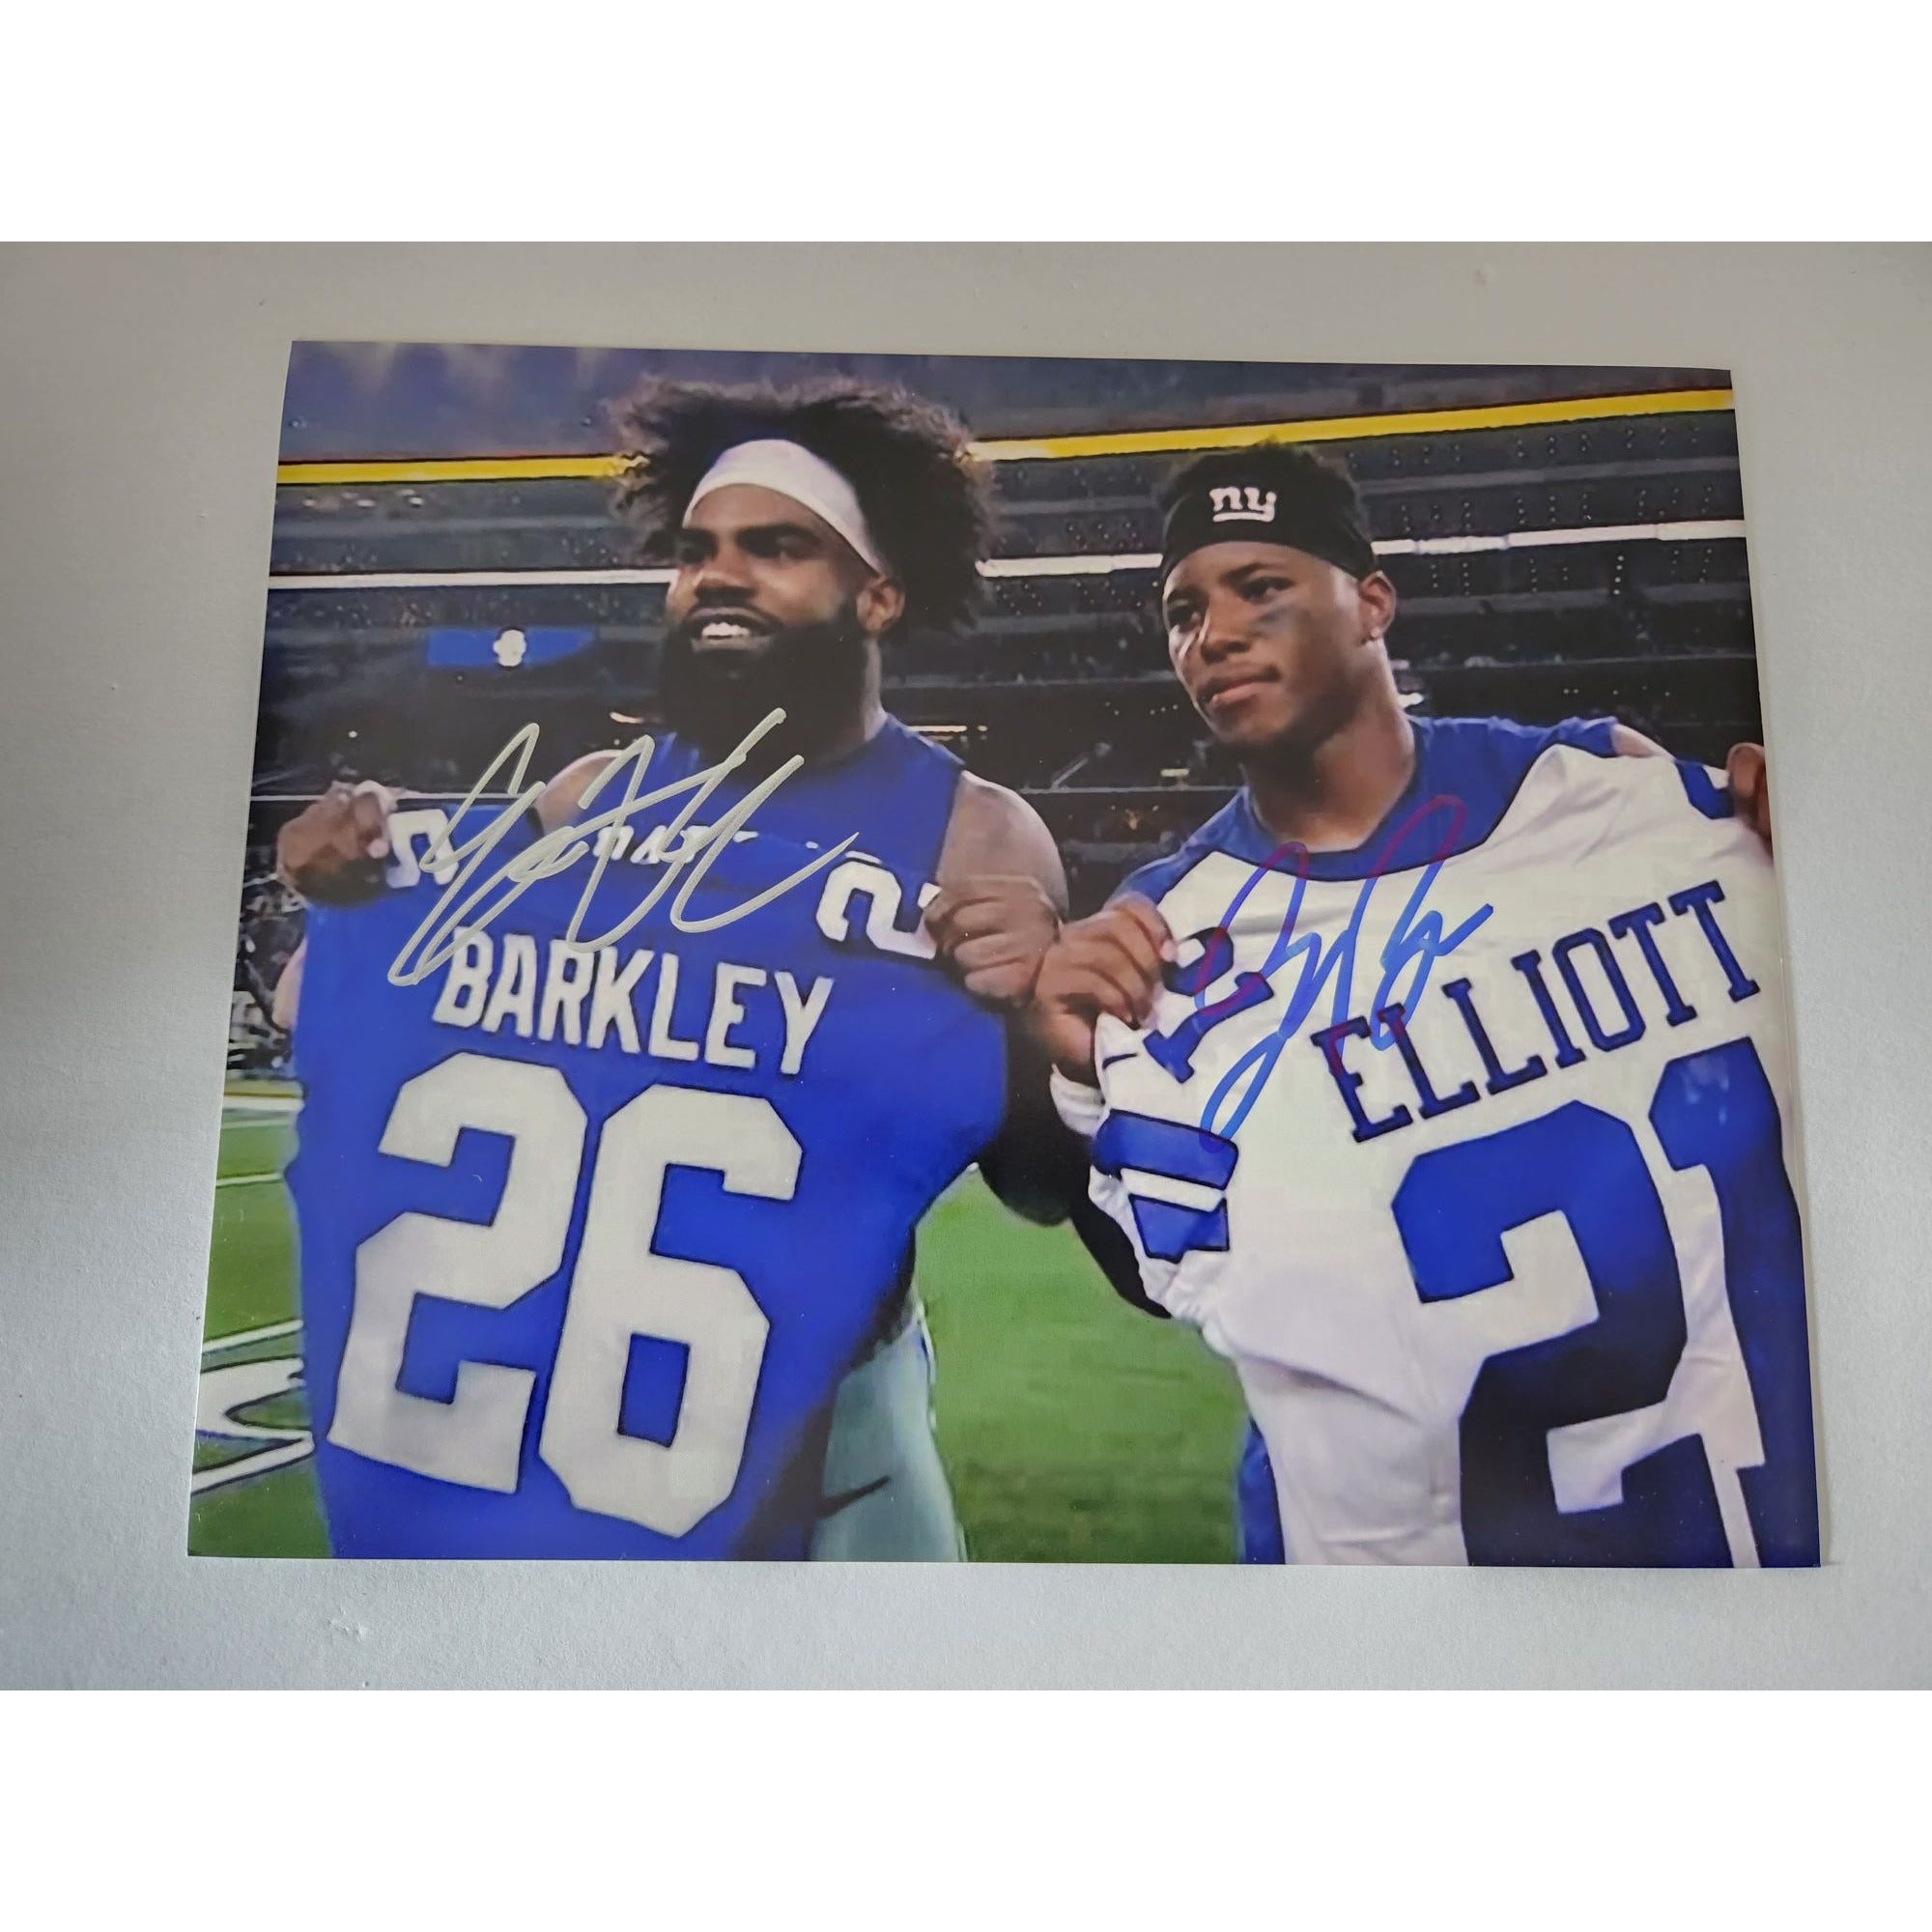 Saquon Barkley and Ezekiel Elliott 8x10 photo signed